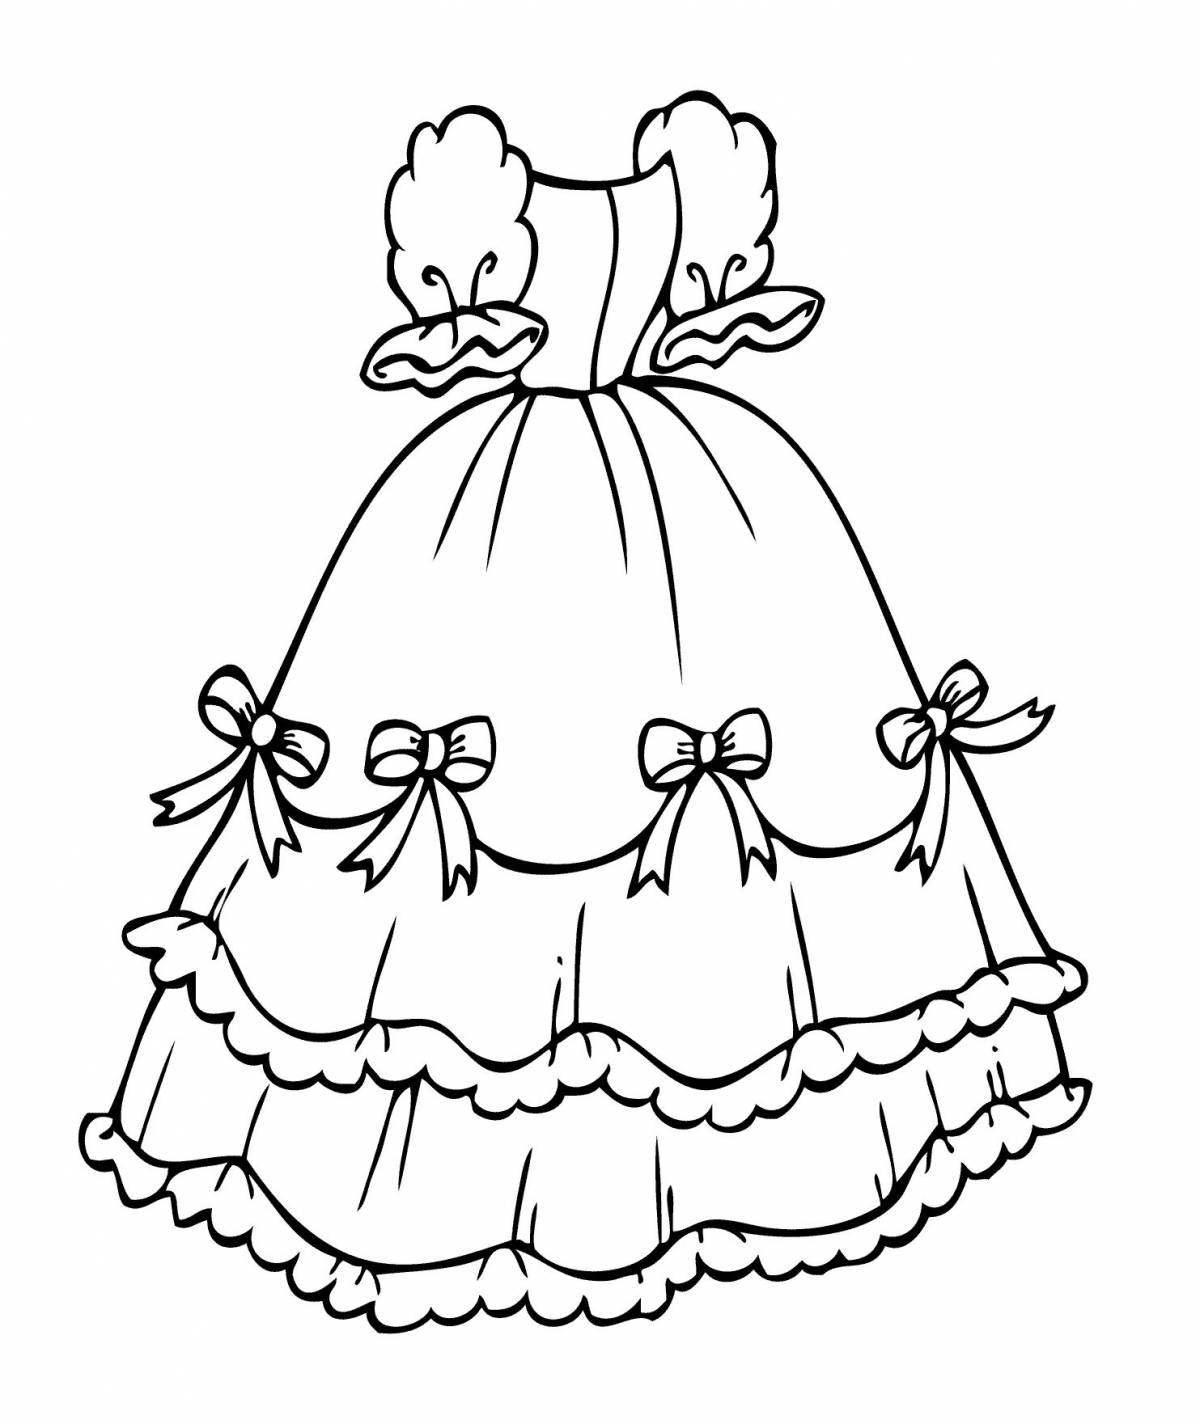 Раскраска игривого кукольного платья для детей 3-4 лет